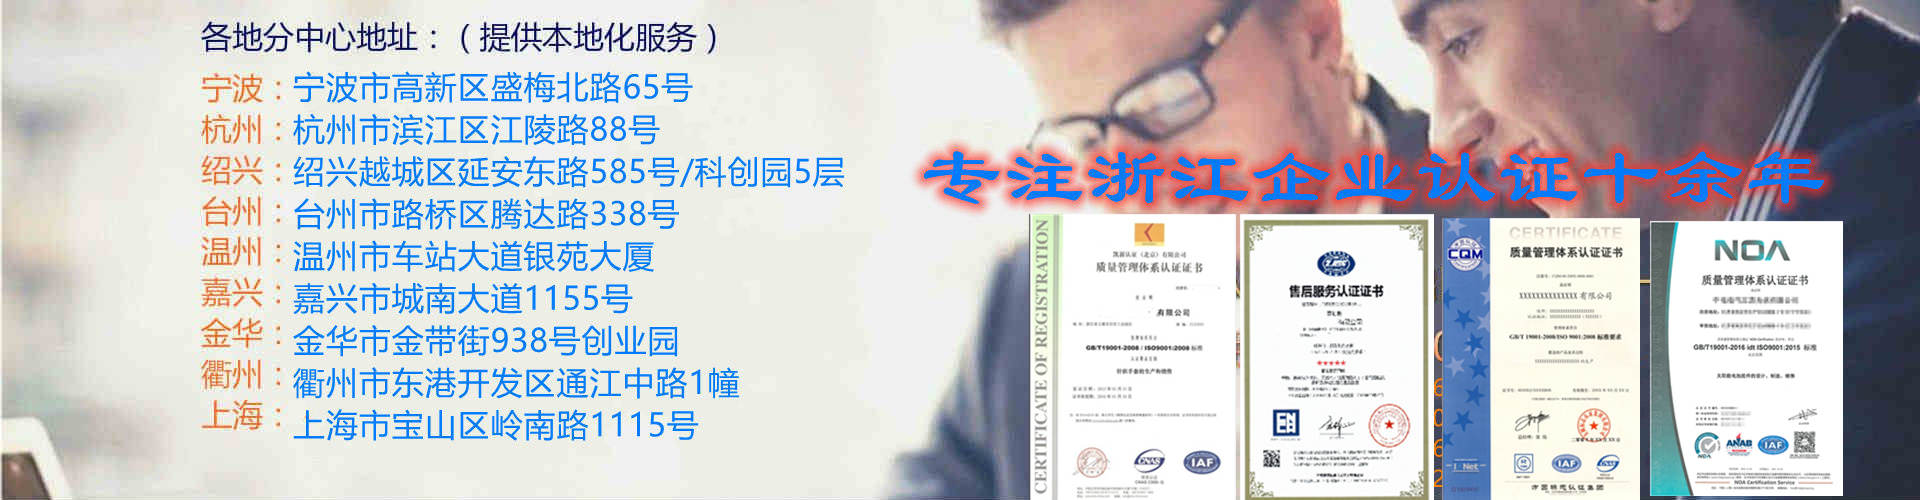 温州ISO9001认证公司 iso9000认证 办理流程